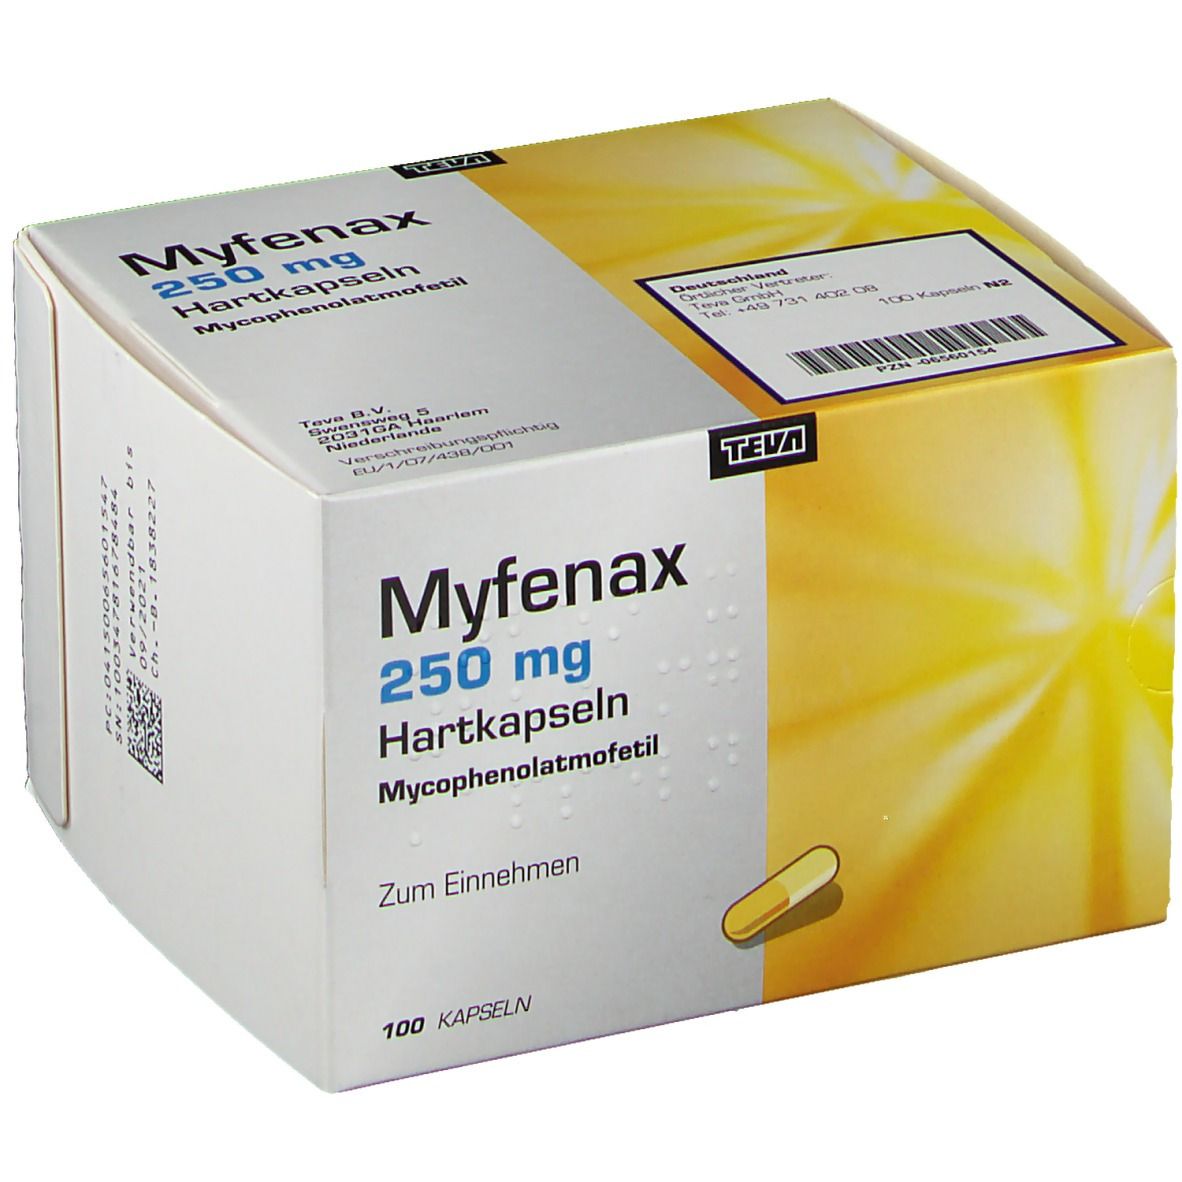 Myfenax 250 mg